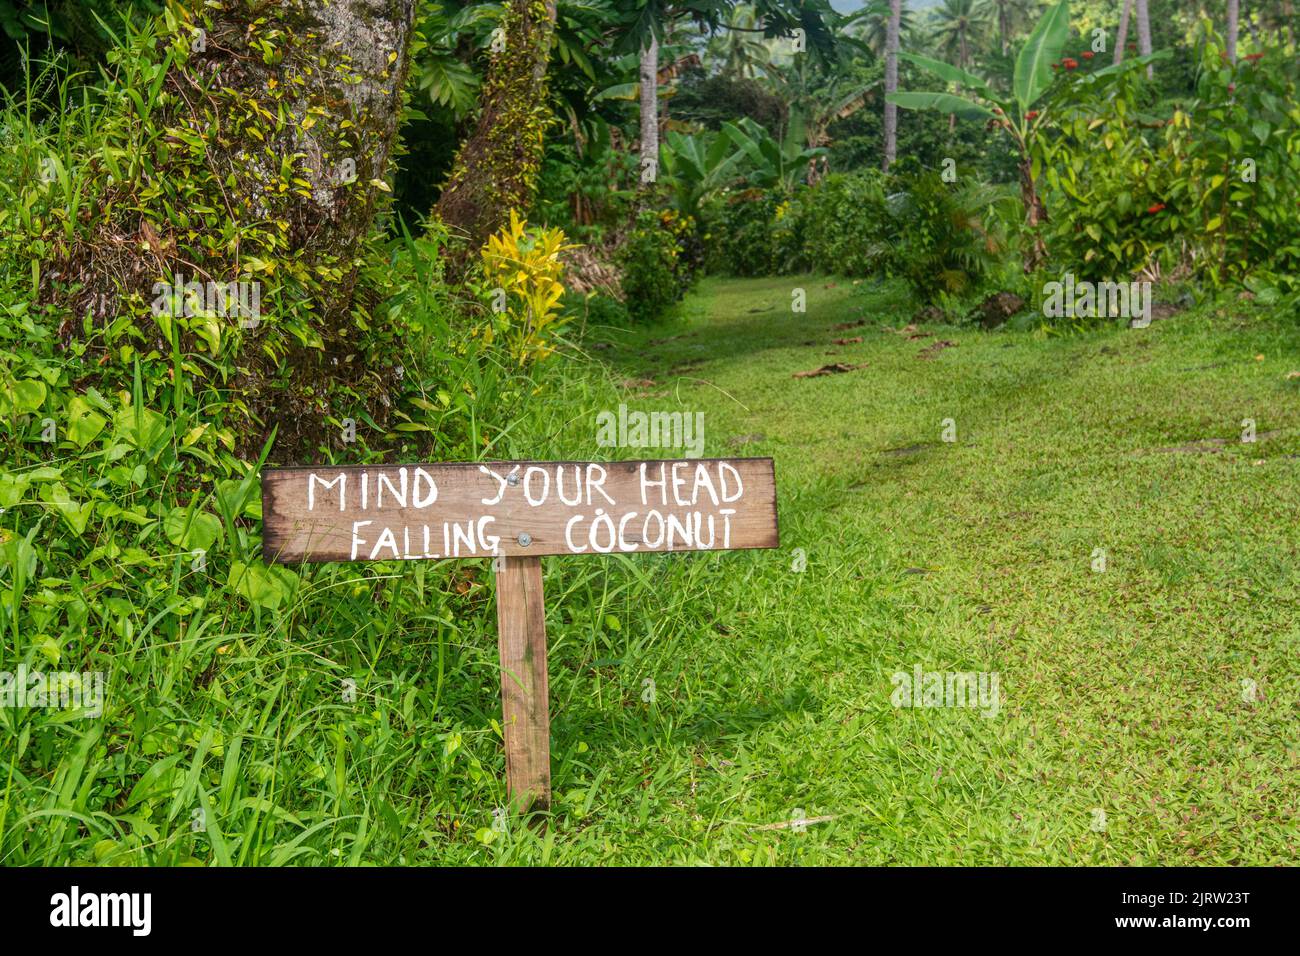 Un segno di legno pubblica un avvertimento per guardare fuori per le noci di cocco che cadono, che possono ucciderli. Foto Stock